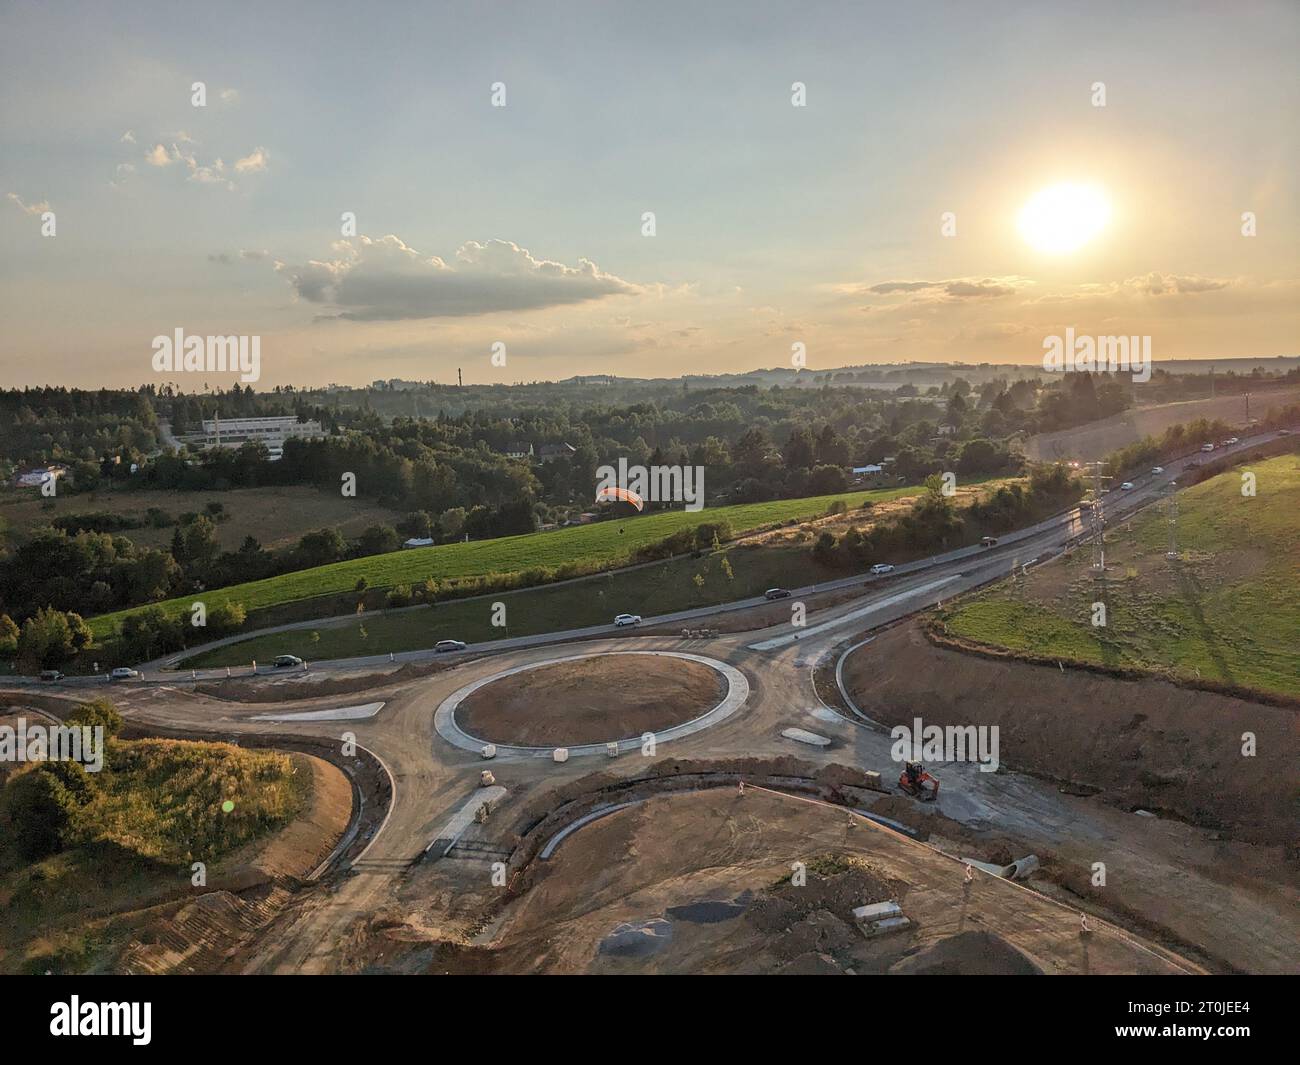 Bau der Umgehungsstraße der Stadt Jihlava mit Kreisverkehr und Brücken, republik Czeh, im Bau befindliche Verkehrsinfrastruktur, Luftpanor Stockfoto